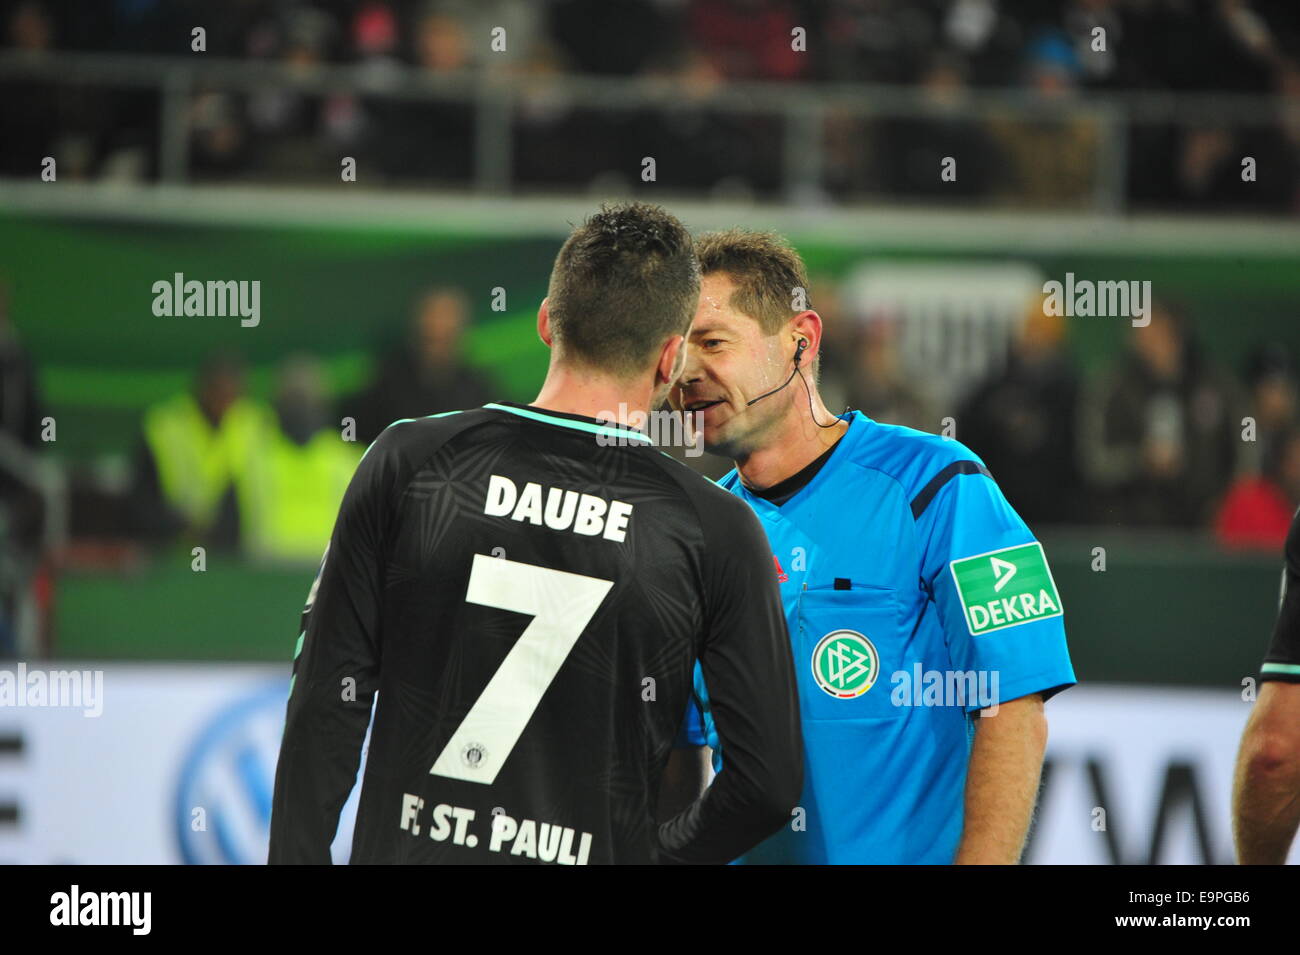 FC St Pauli Player Daube dans clinch avec l'arbitre Günter Perl, DFB, Hambourg. Usage éditorial uniquement. Banque D'Images